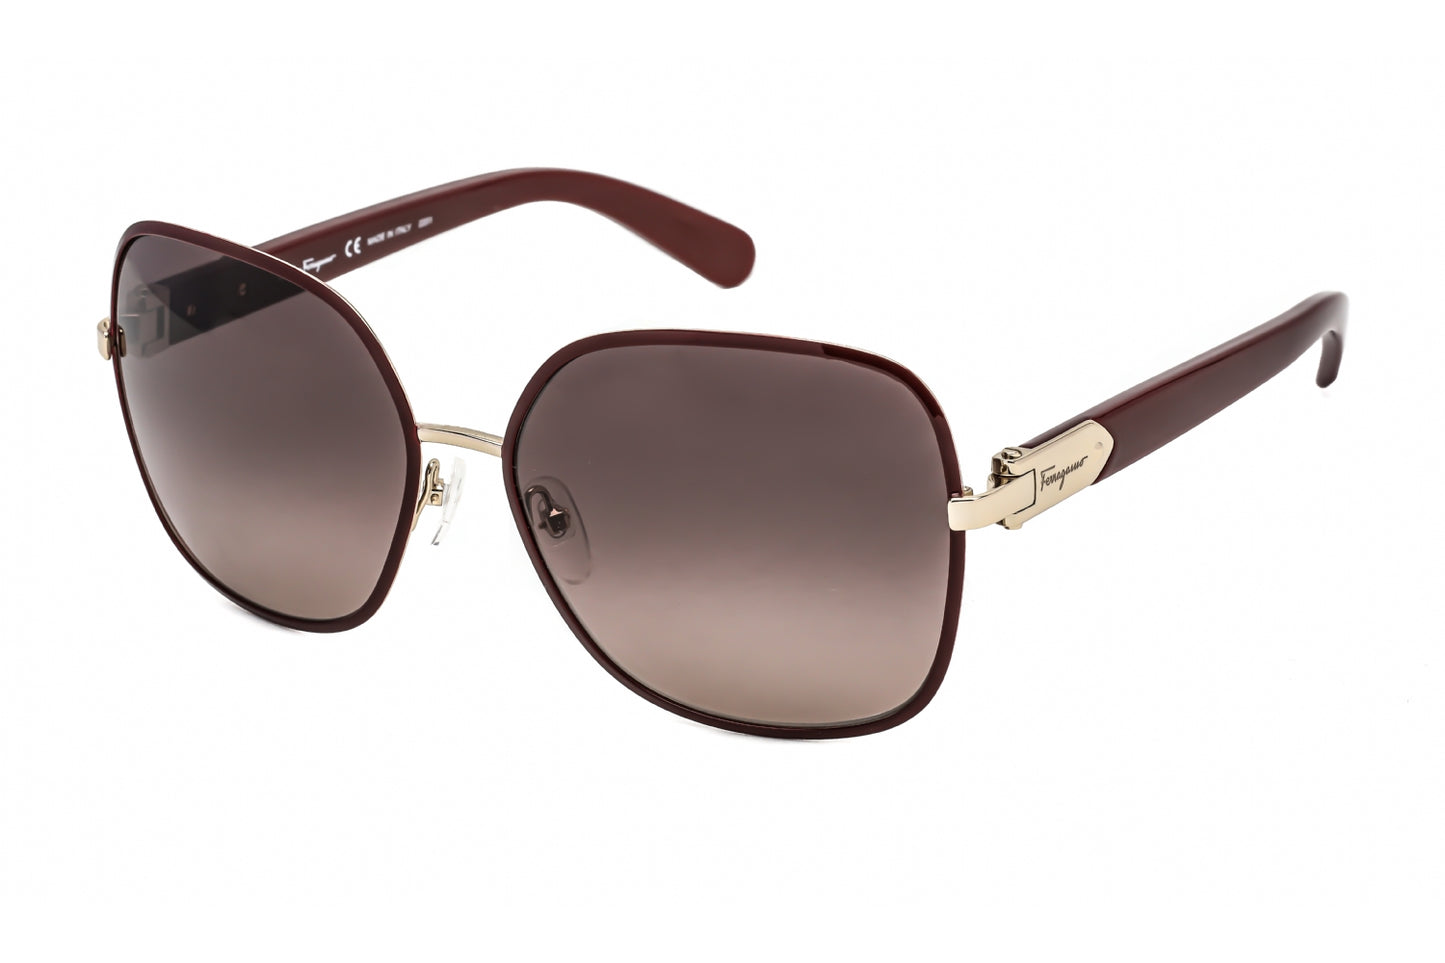 Salvatore Ferragamo SF150S 728 59mm New Sunglasses